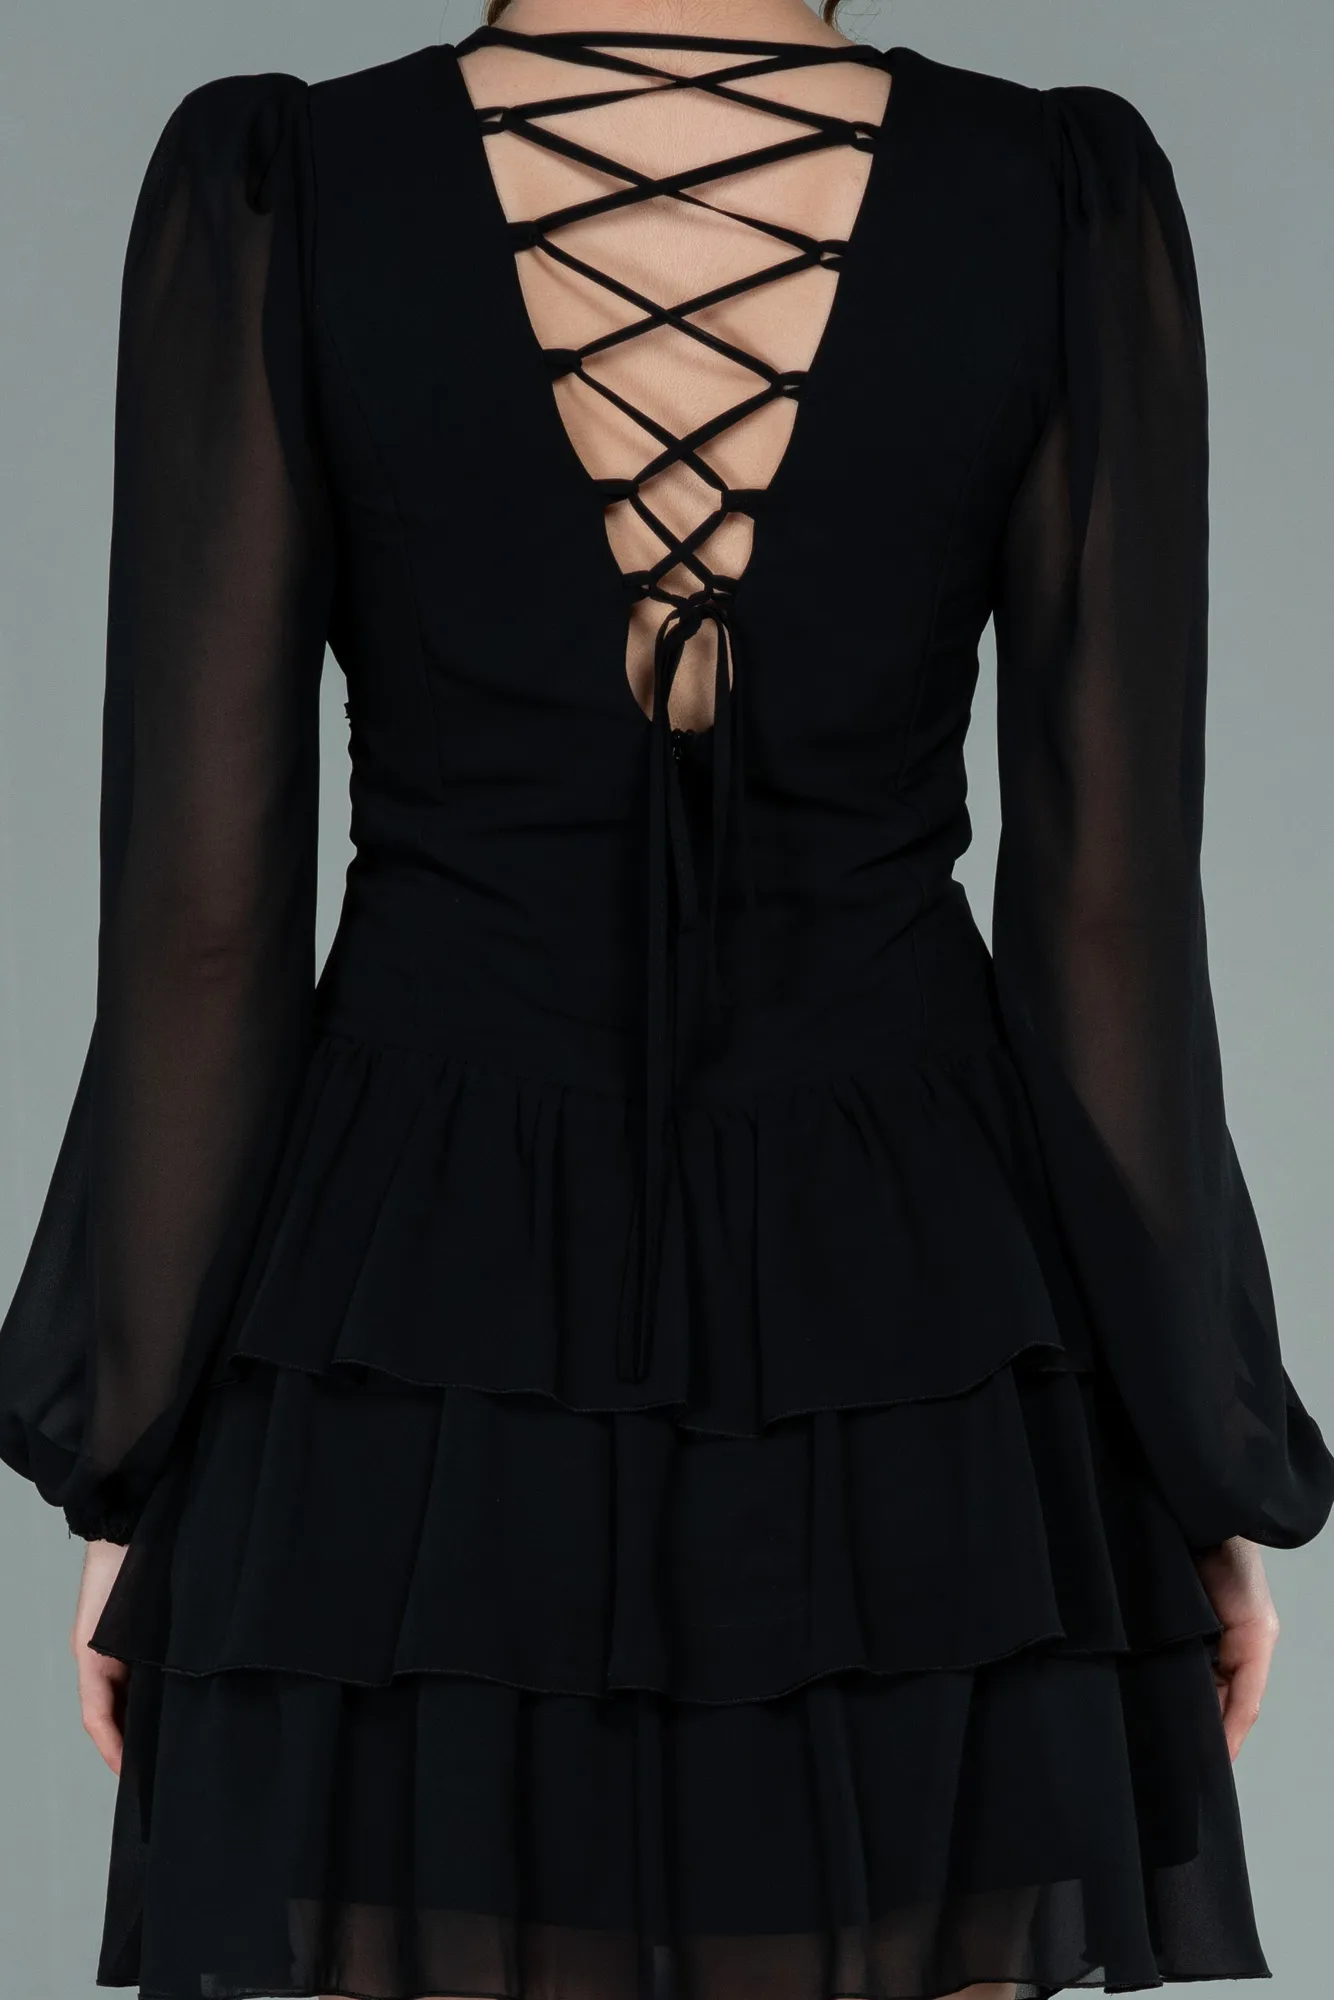 Black-Mini Chiffon Invitation Dress ABK1899